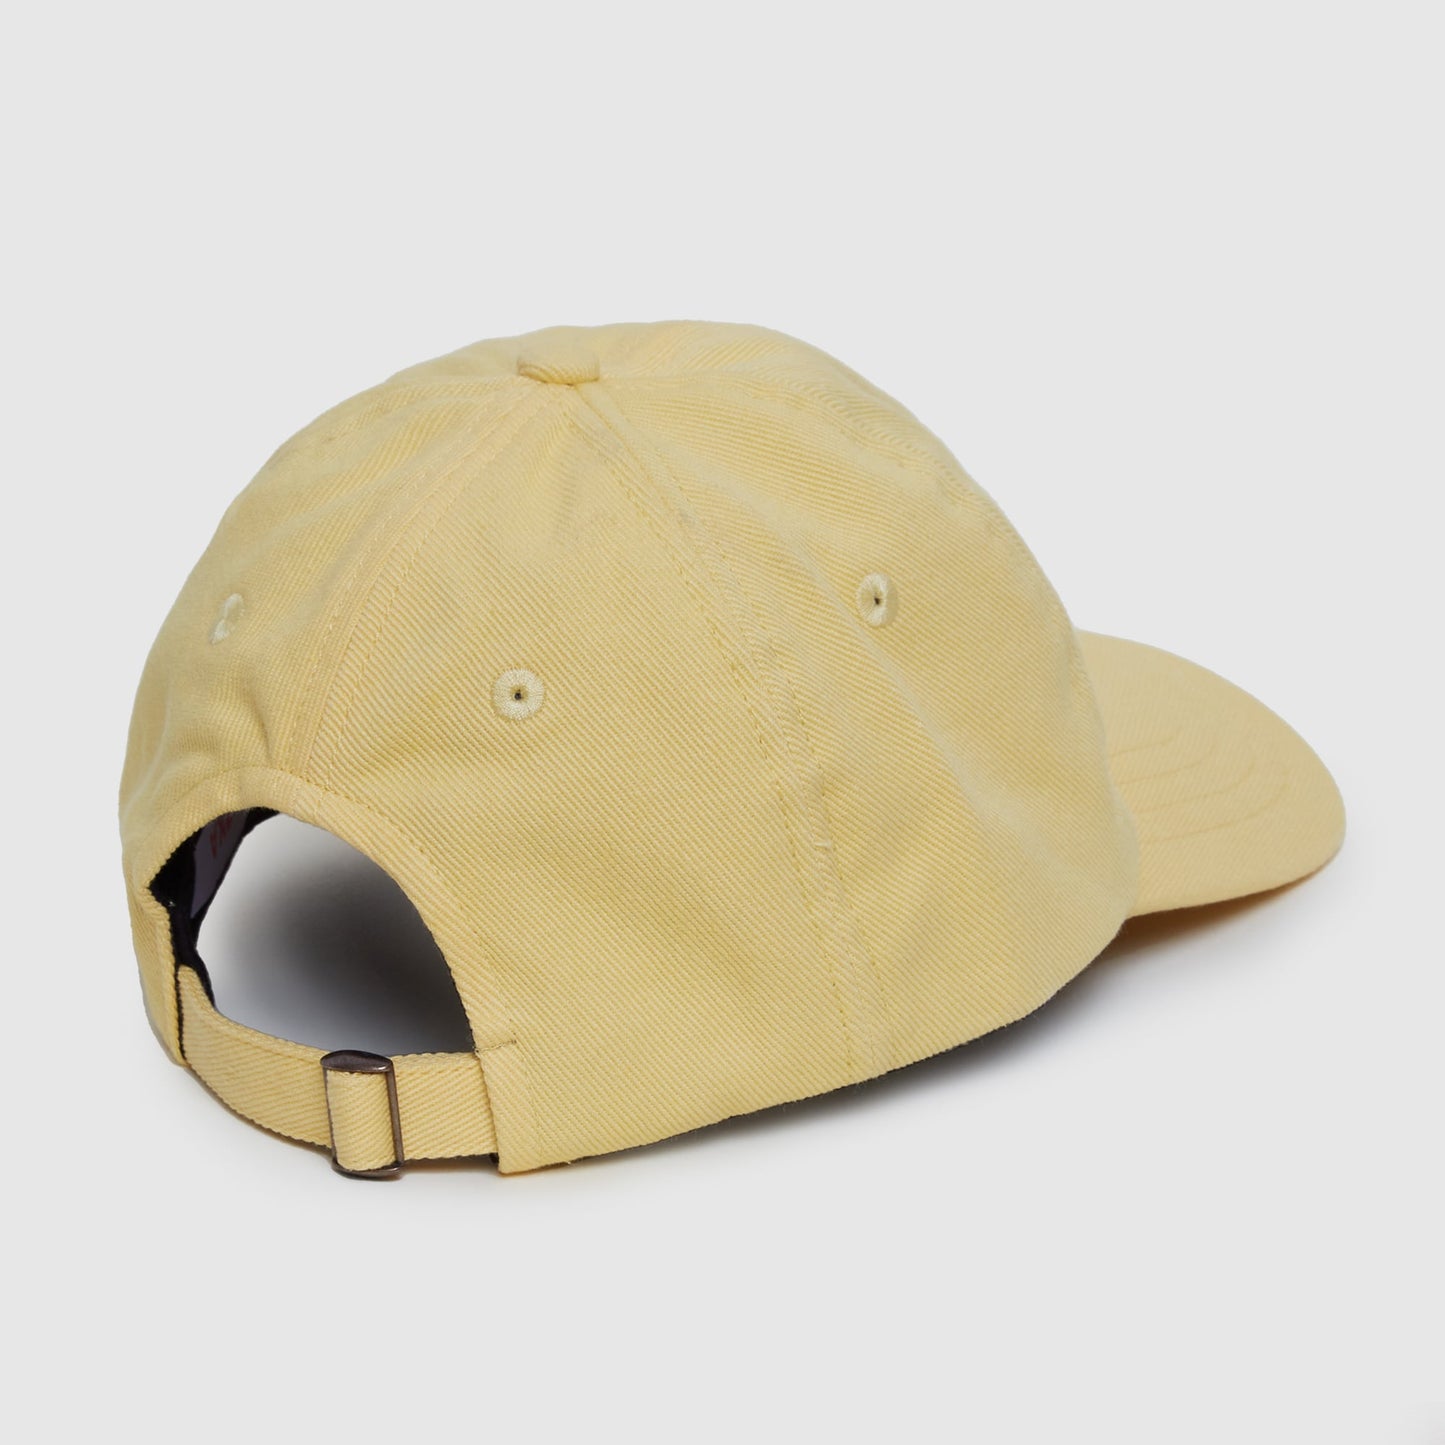 La casquette jaune